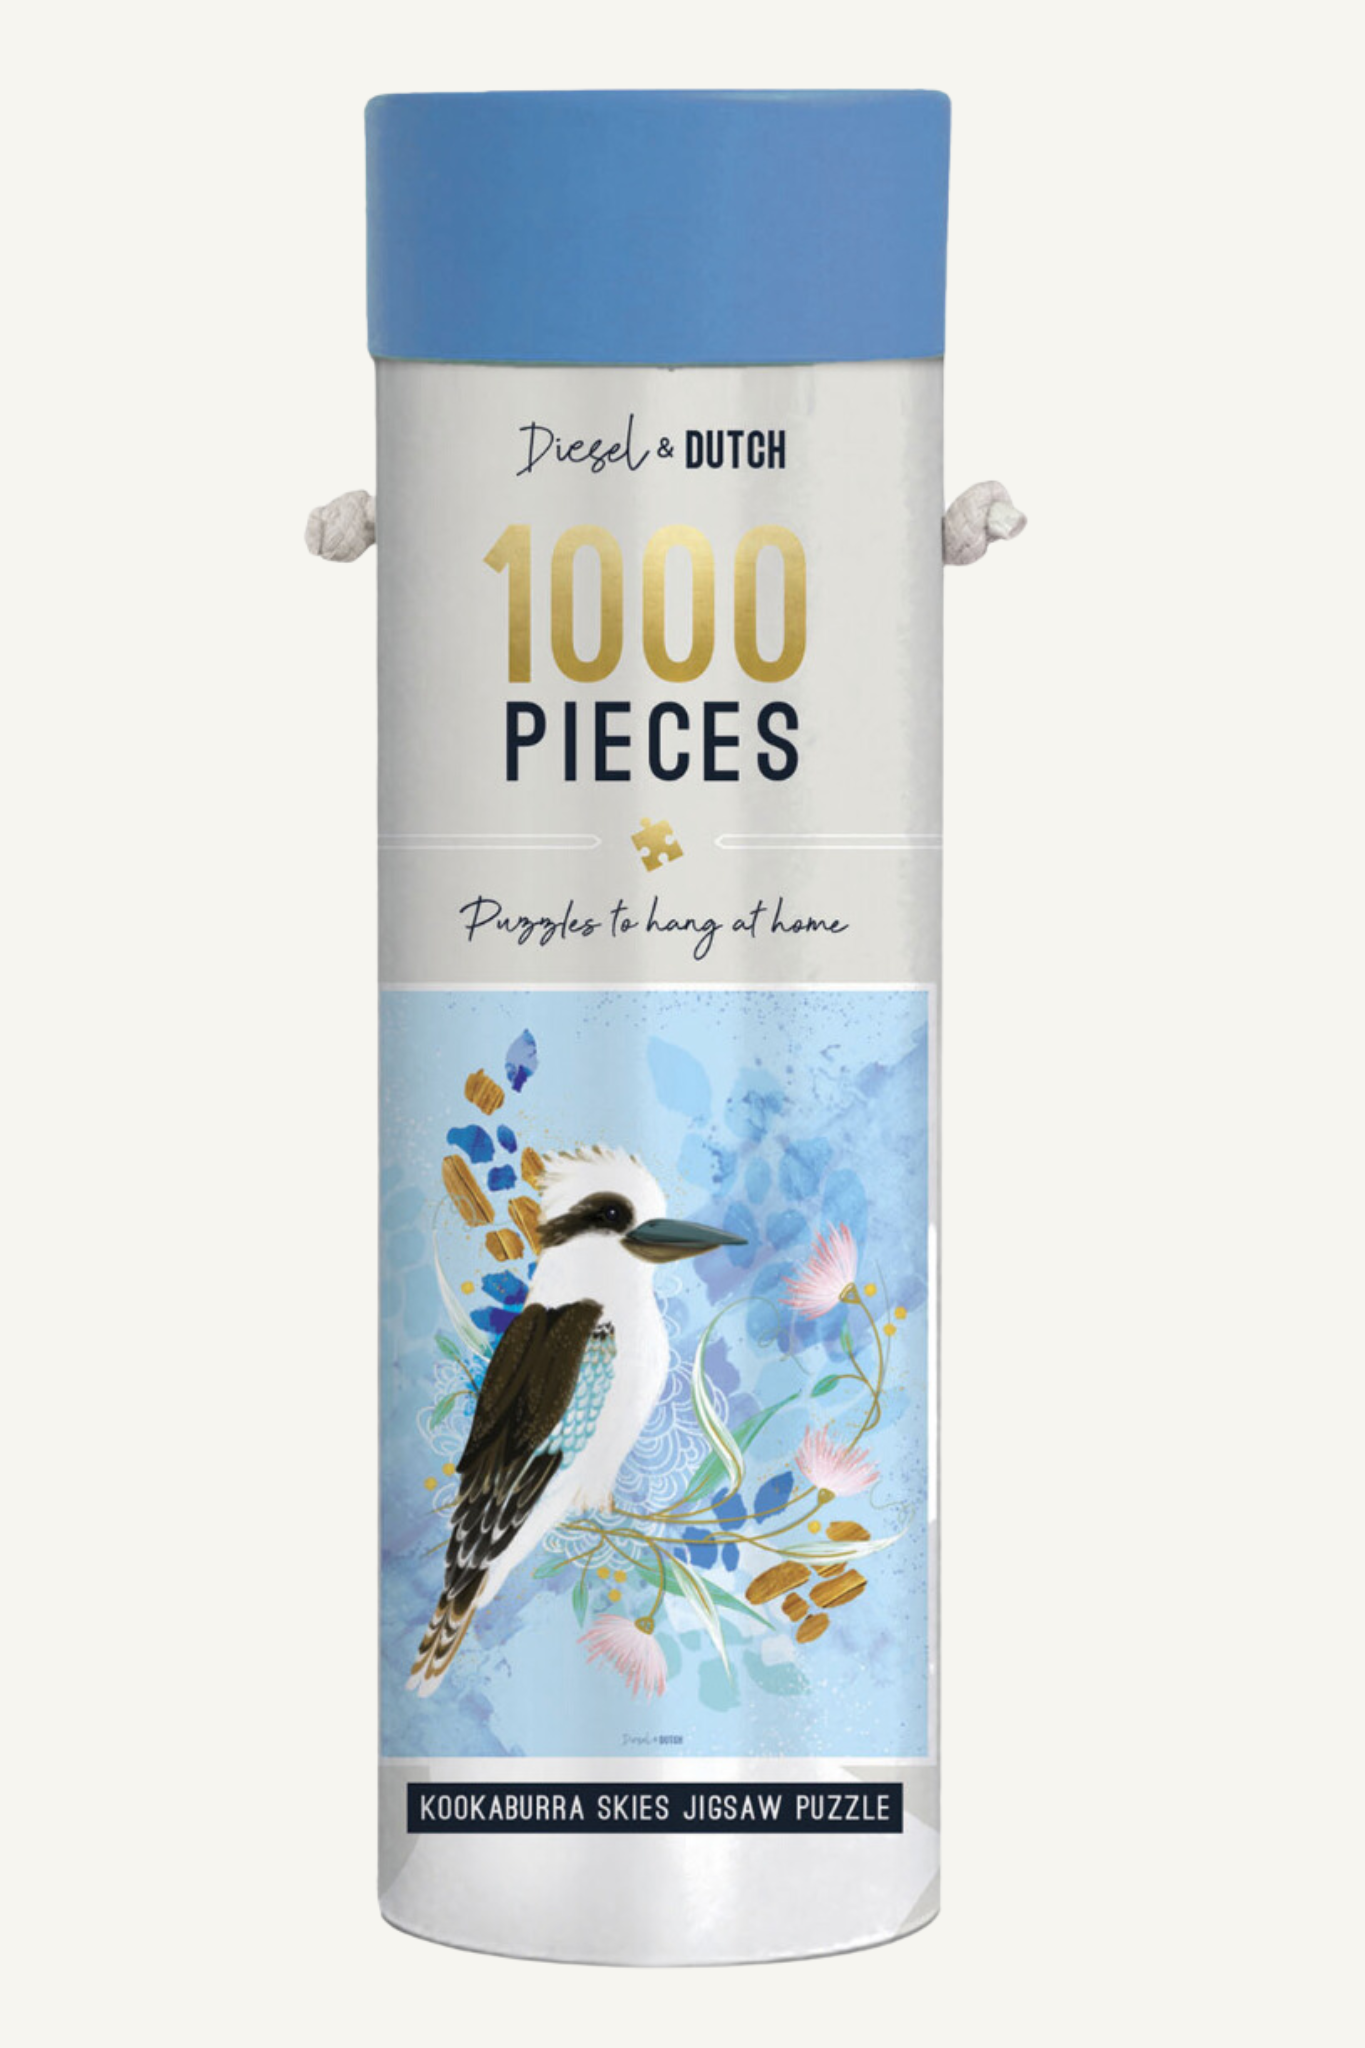 Diesel & Dutch 1000 piece Kookaburra puzzle